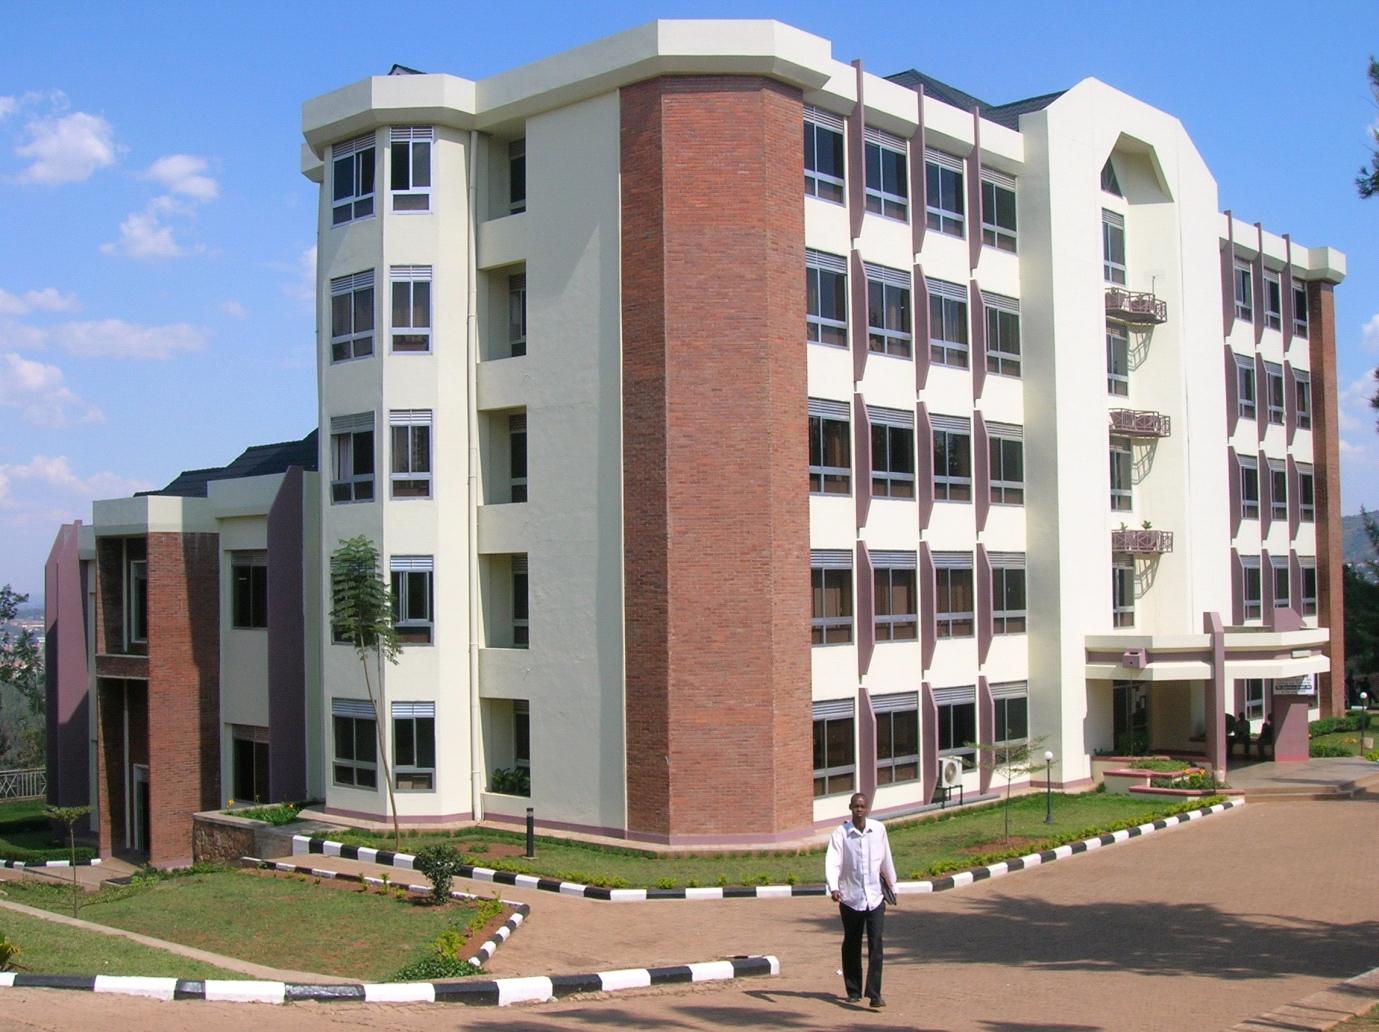 University of Rwanda to Start Aeronautics and Aerospace Program Next Academic Year